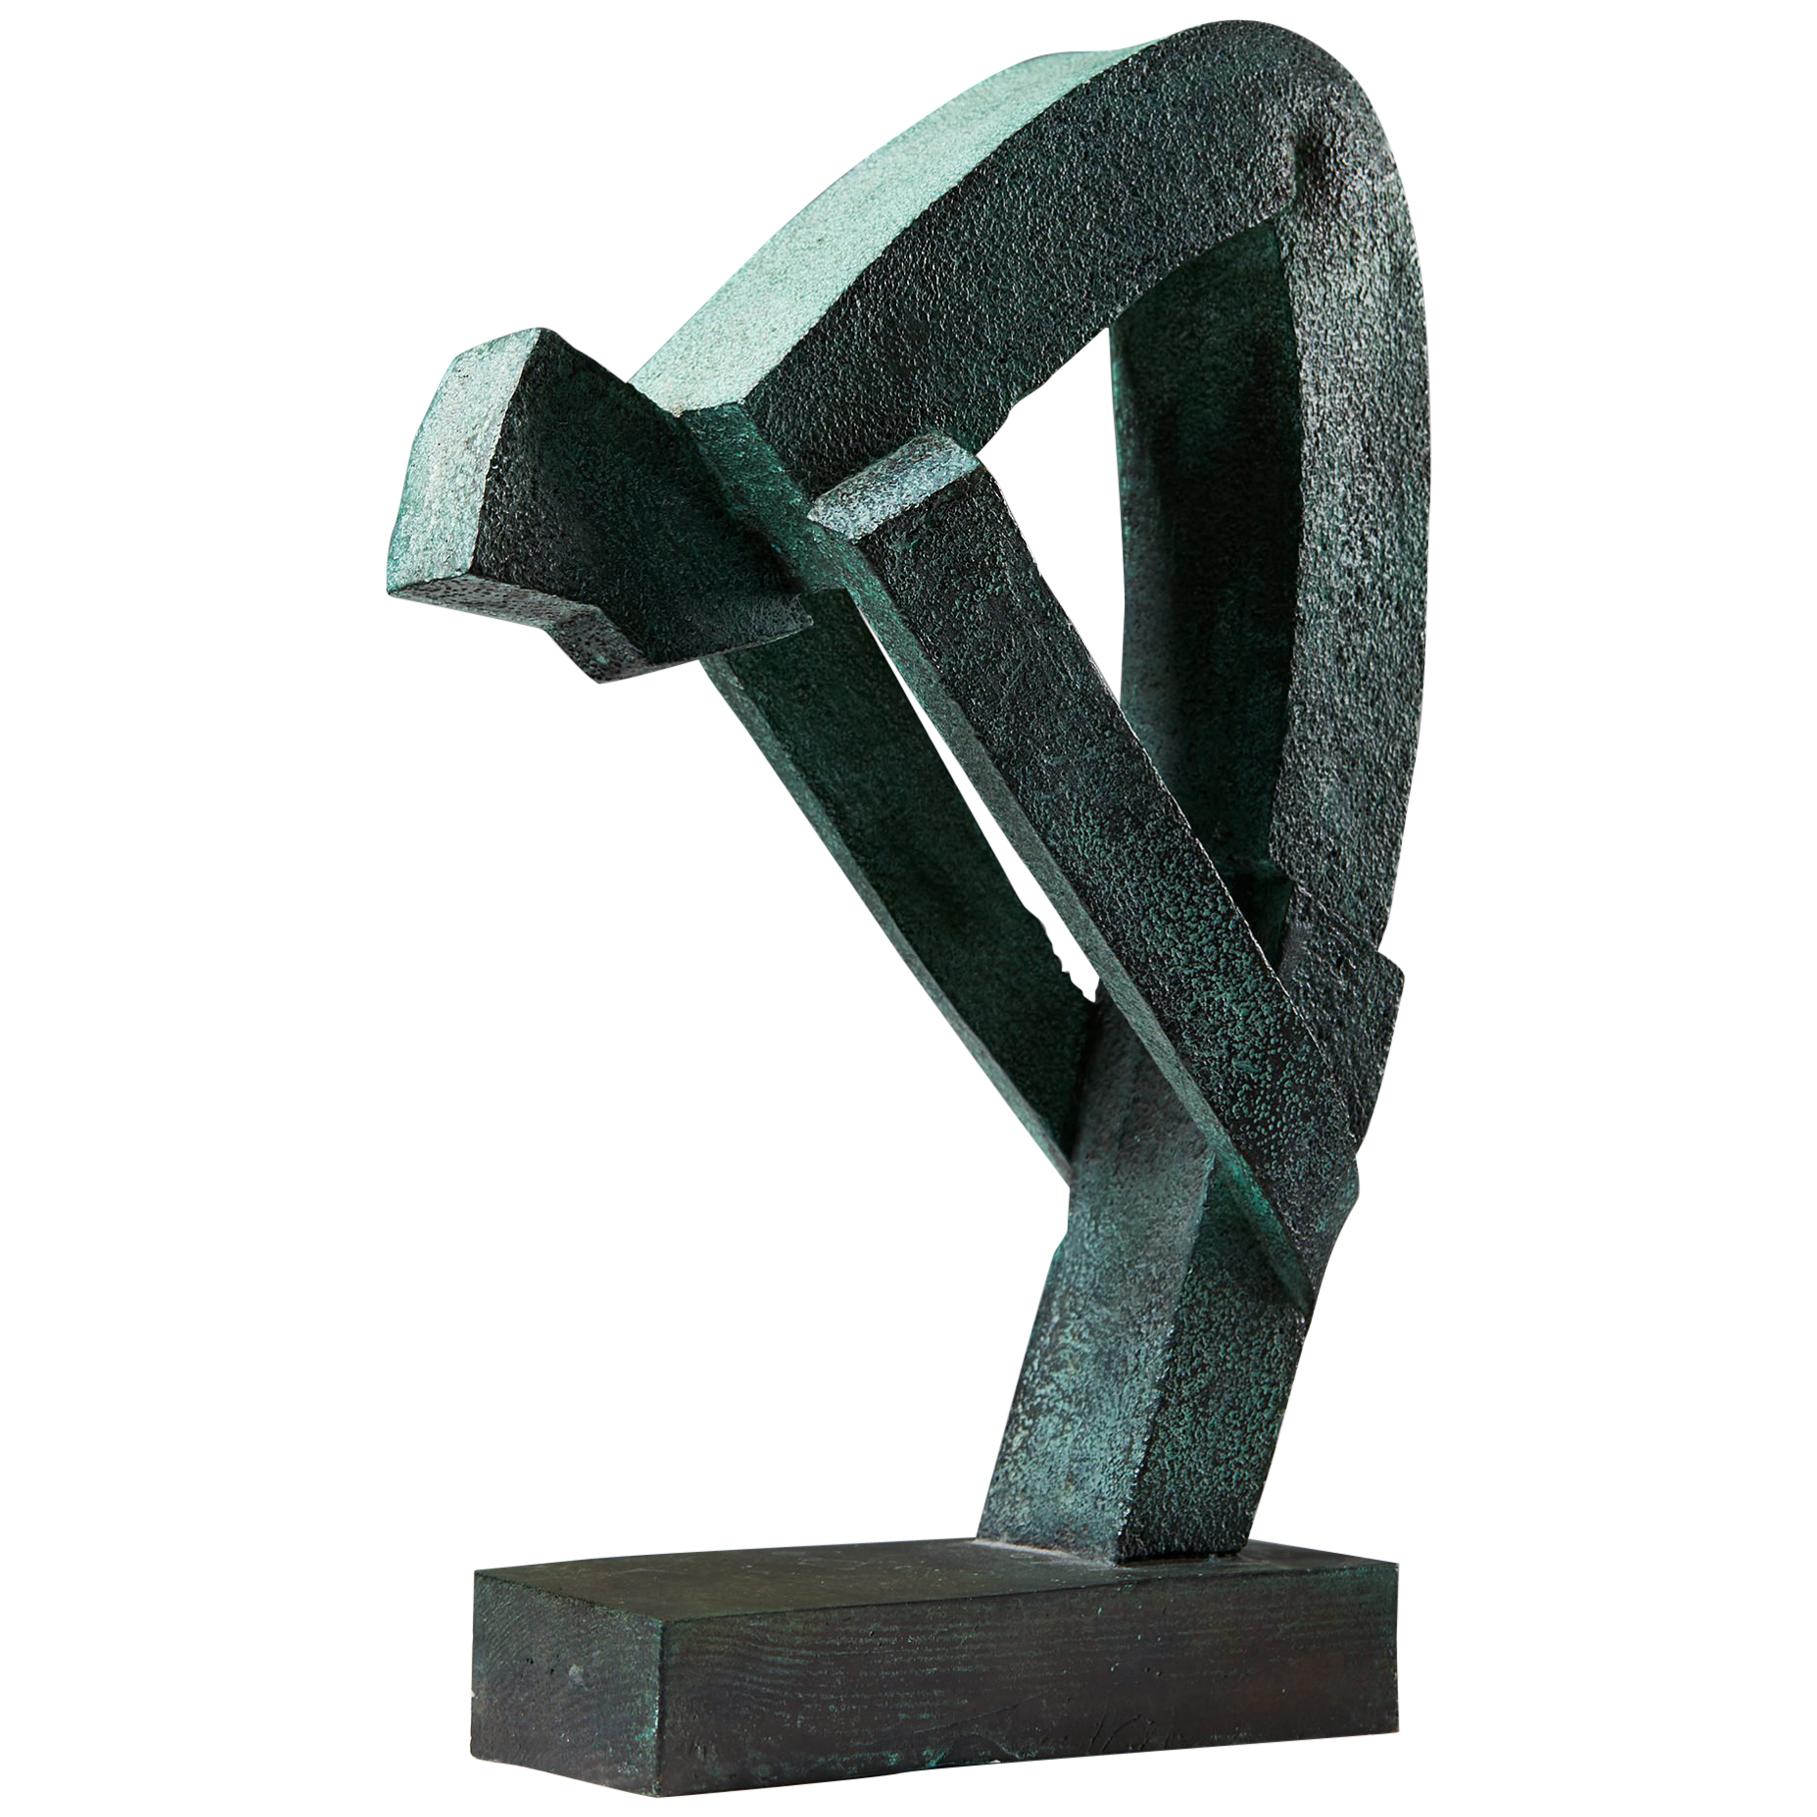 Sculpture “Stund 1” Designed by Britt-Ingrid Persson ‘Bip’, Sweden, 1990s